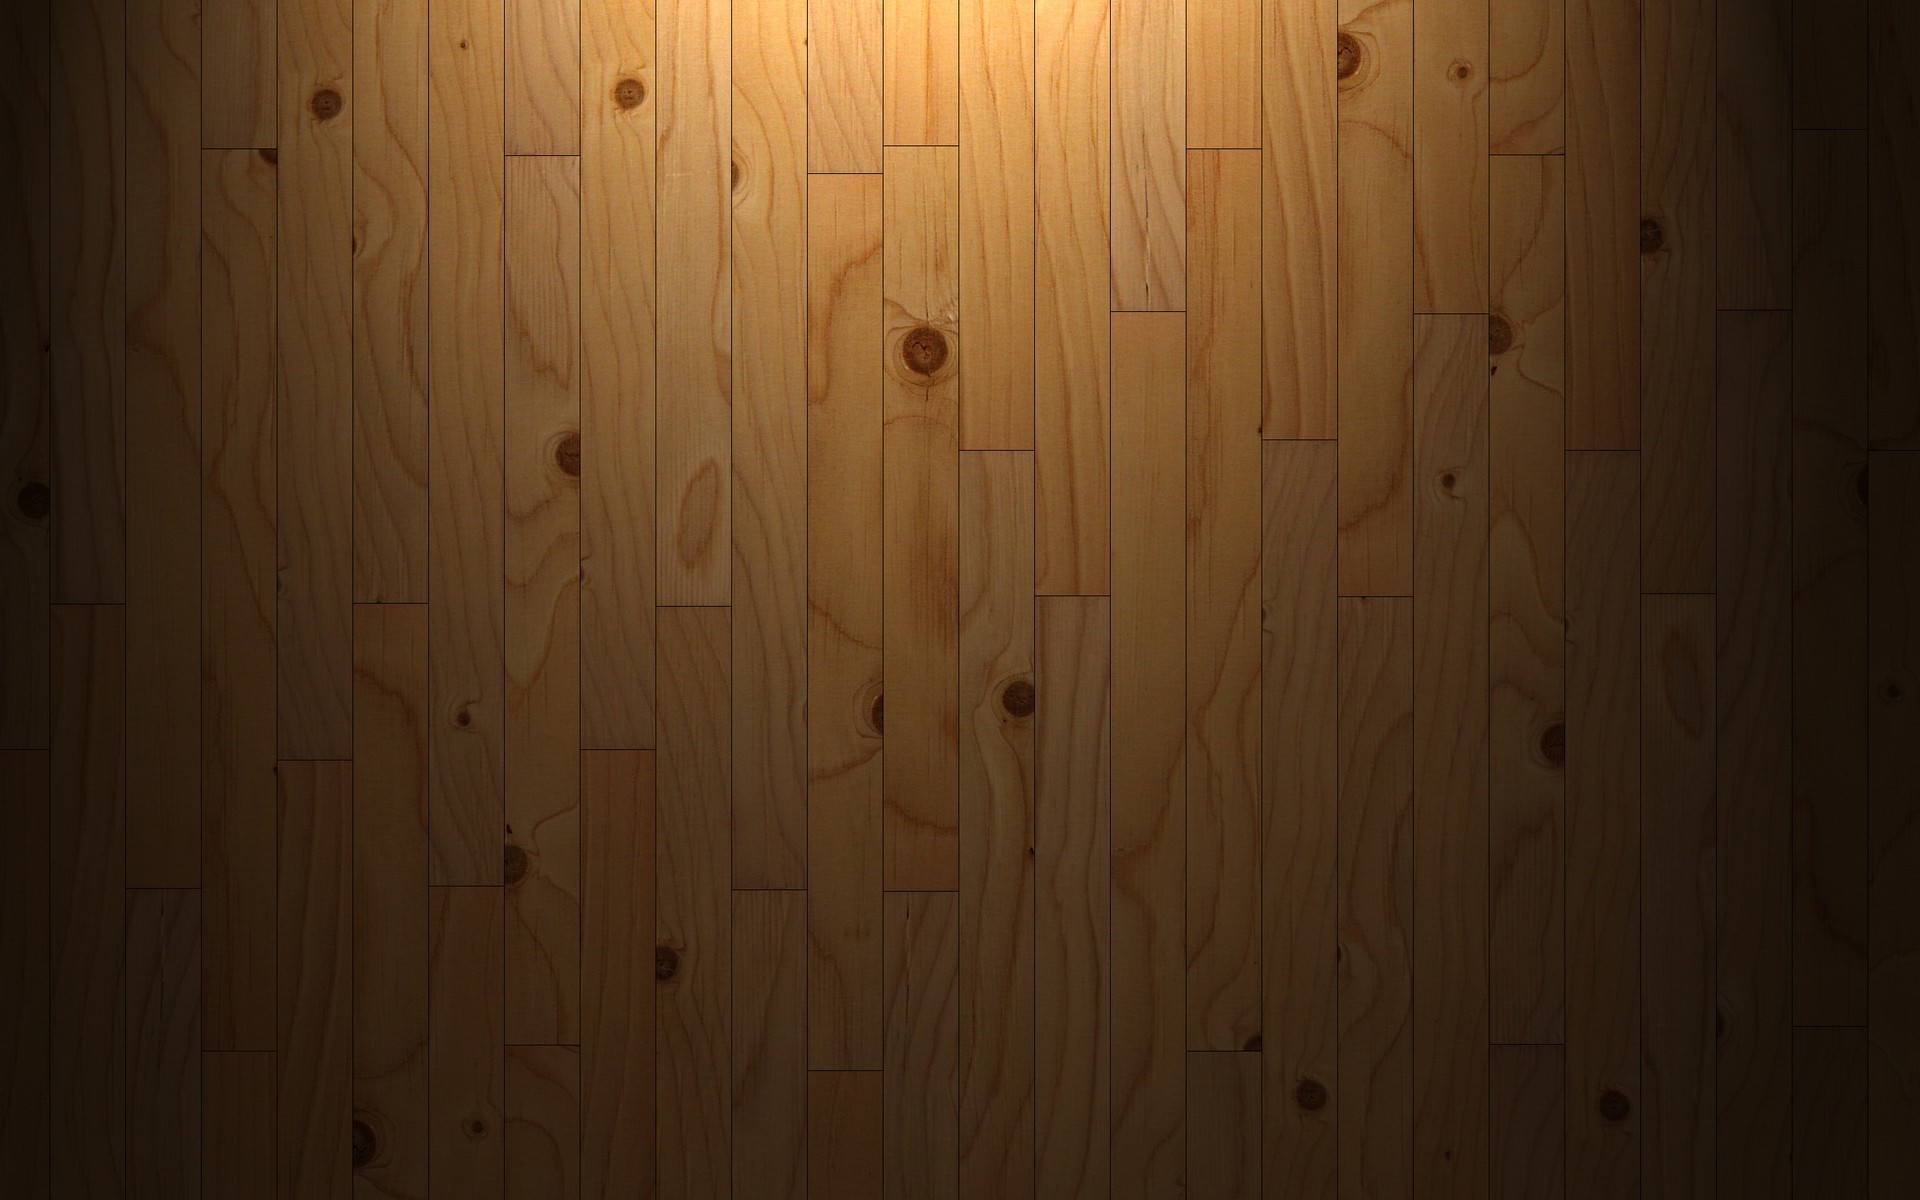 дерево древесины стены грязные грубо пол журнал плотницкий деревянный ретро поверхность паркетный темный мебель доска панель старый дизайн интерьера деревянные ткань зерна